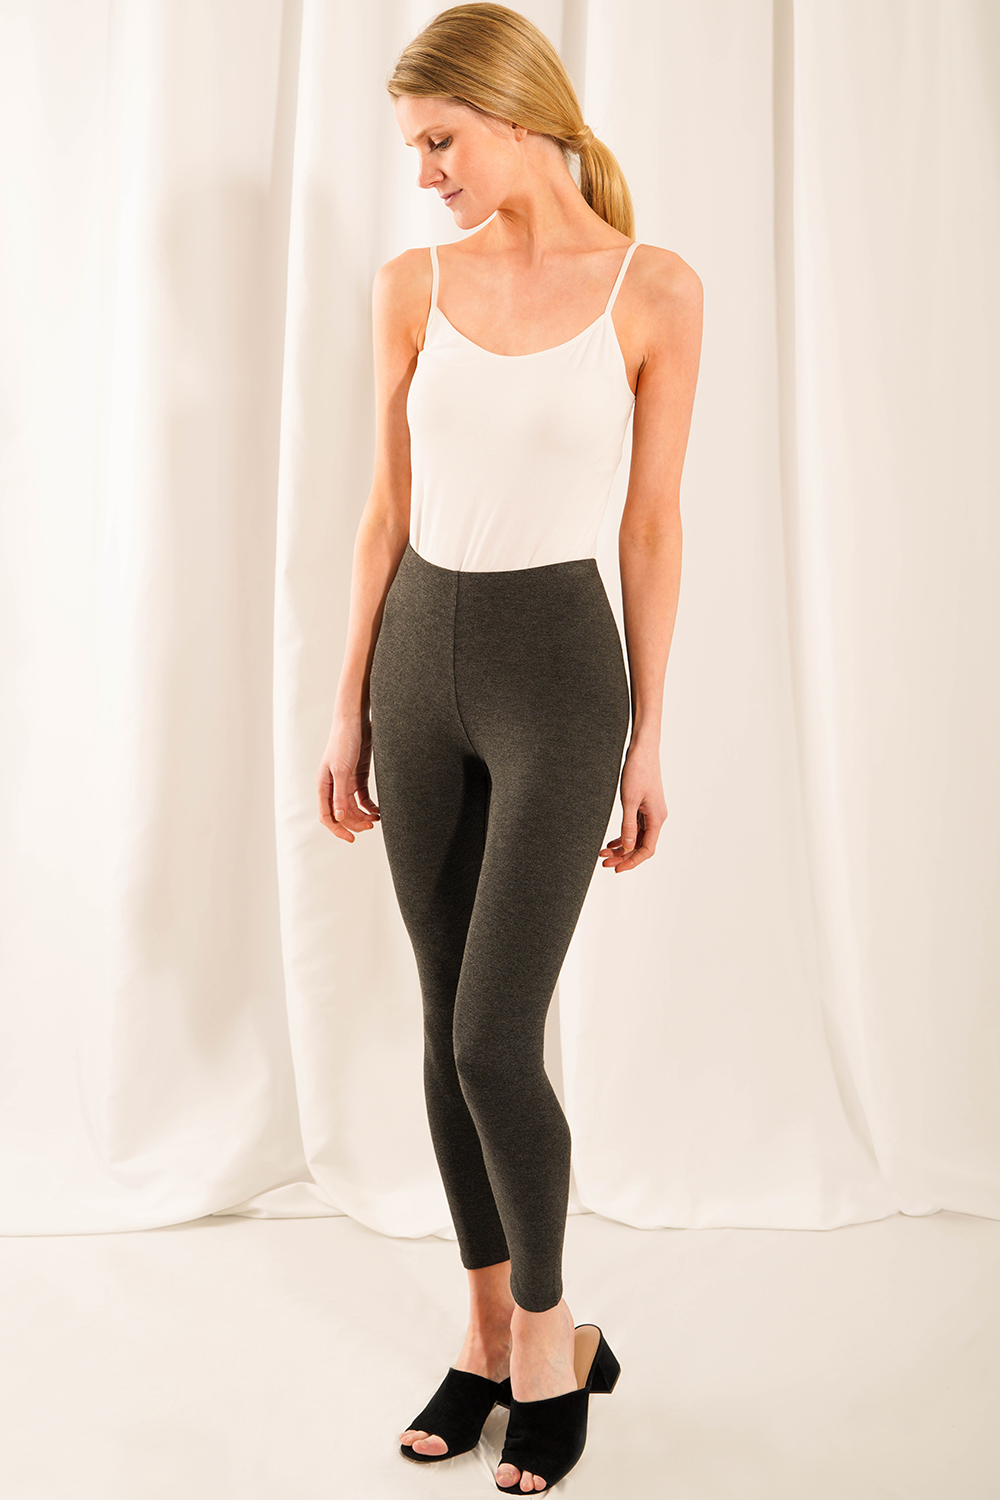 Echinacea Designer Leggings  Premium leggings, Leggings design, Clothes  design